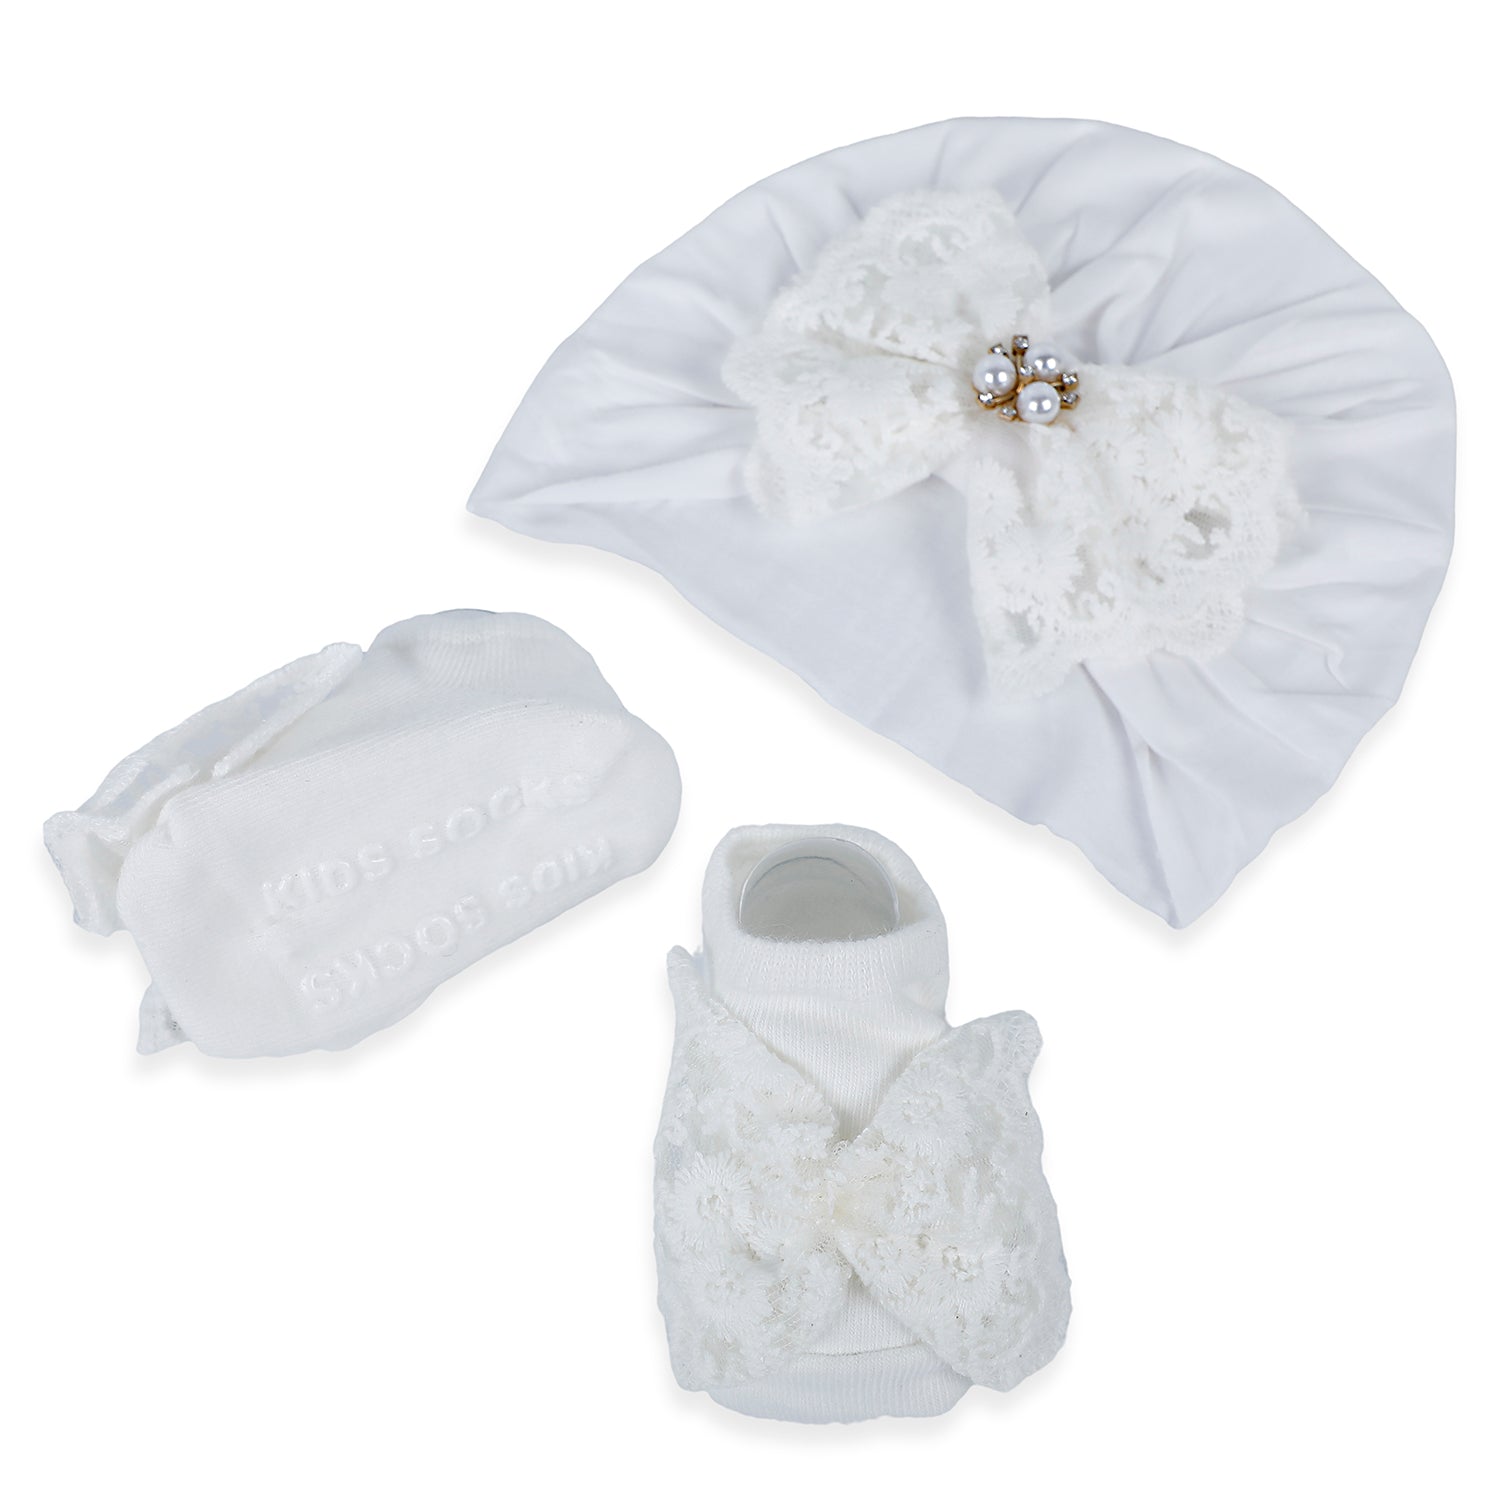 Baby Moo Royal Princess Bow Matching Socks And Cap Set - White